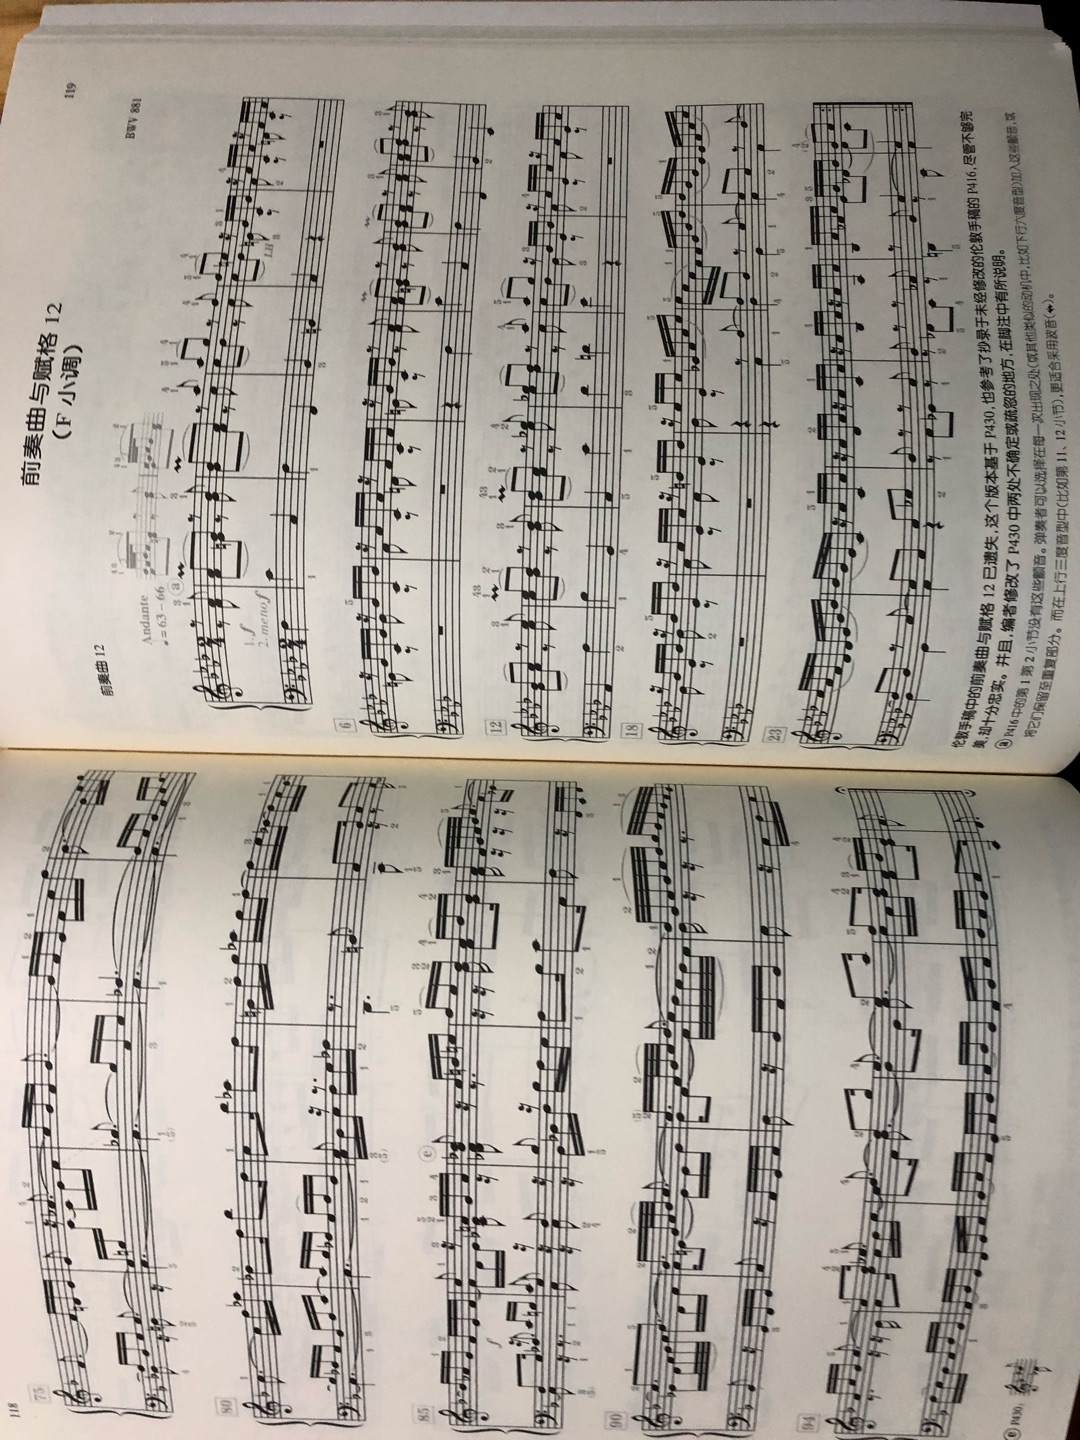 巴赫的平均律钢琴曲集，这个版本很棒！详细的给出咯很多地方的演奏参考……印刷也很棒！是一本不可多得的好书！